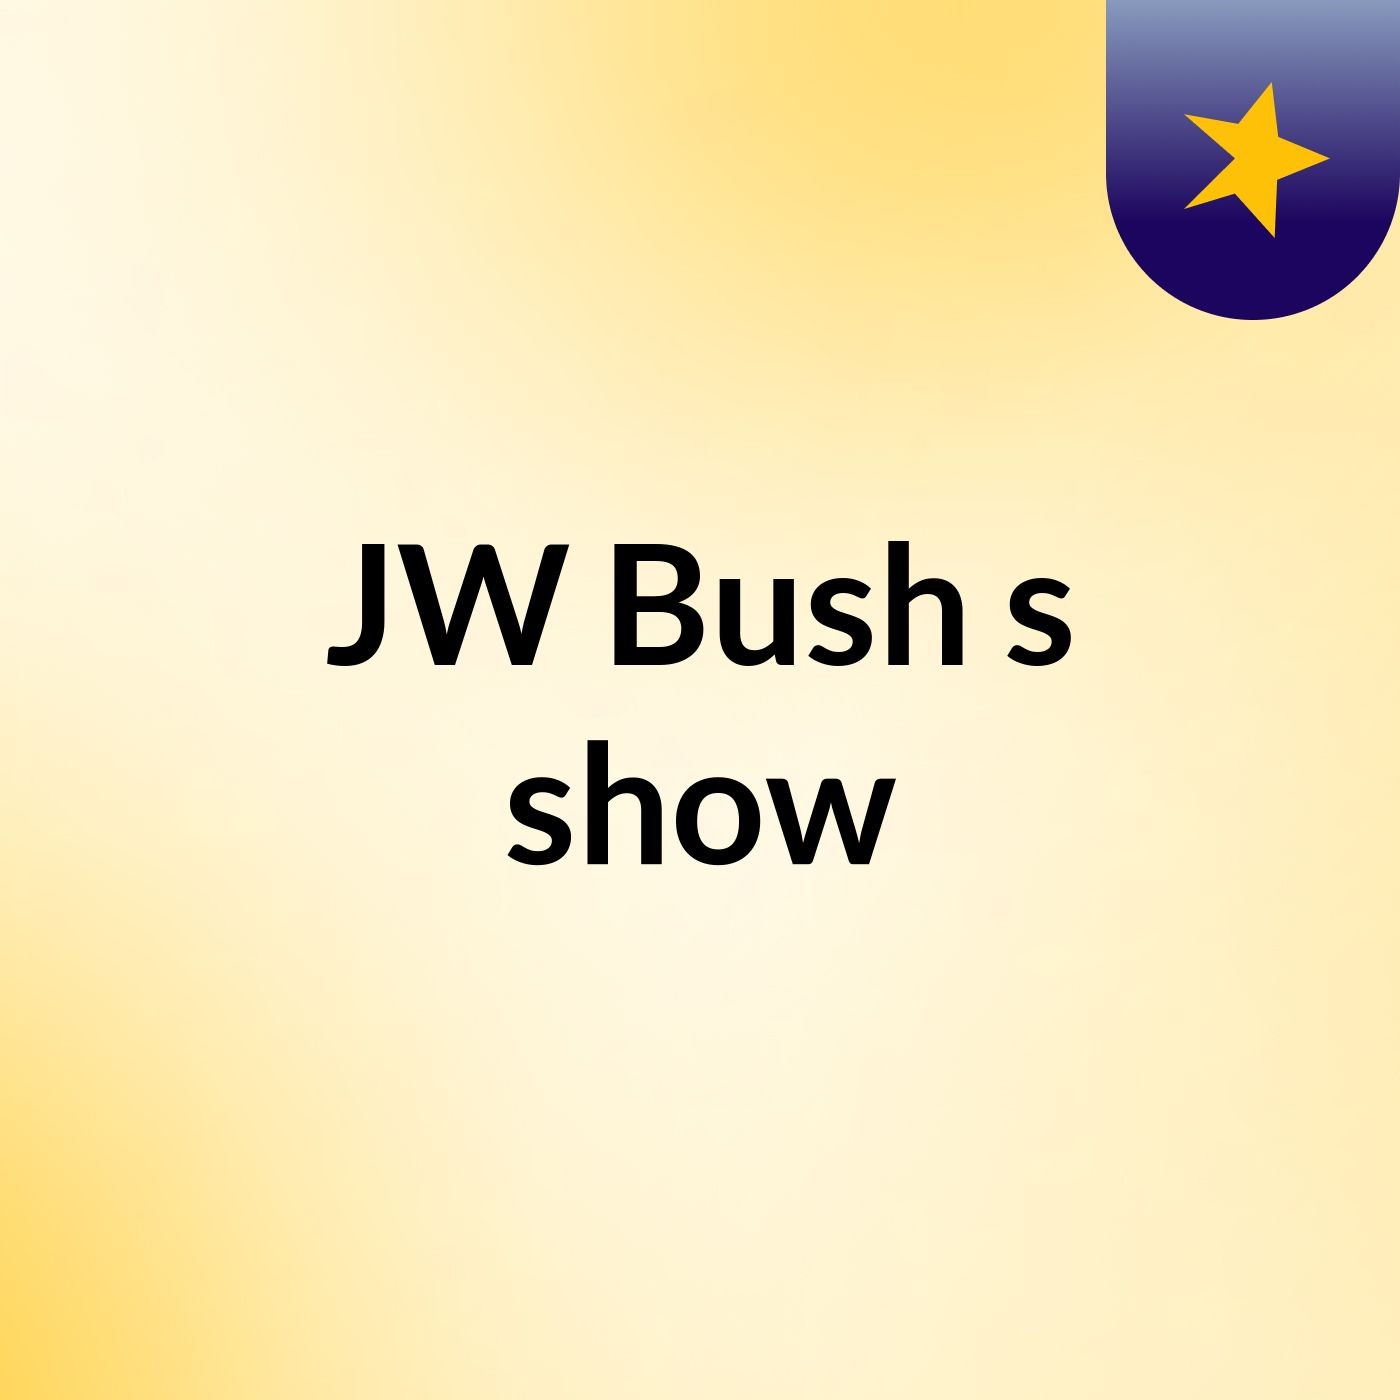 JW Bush's show